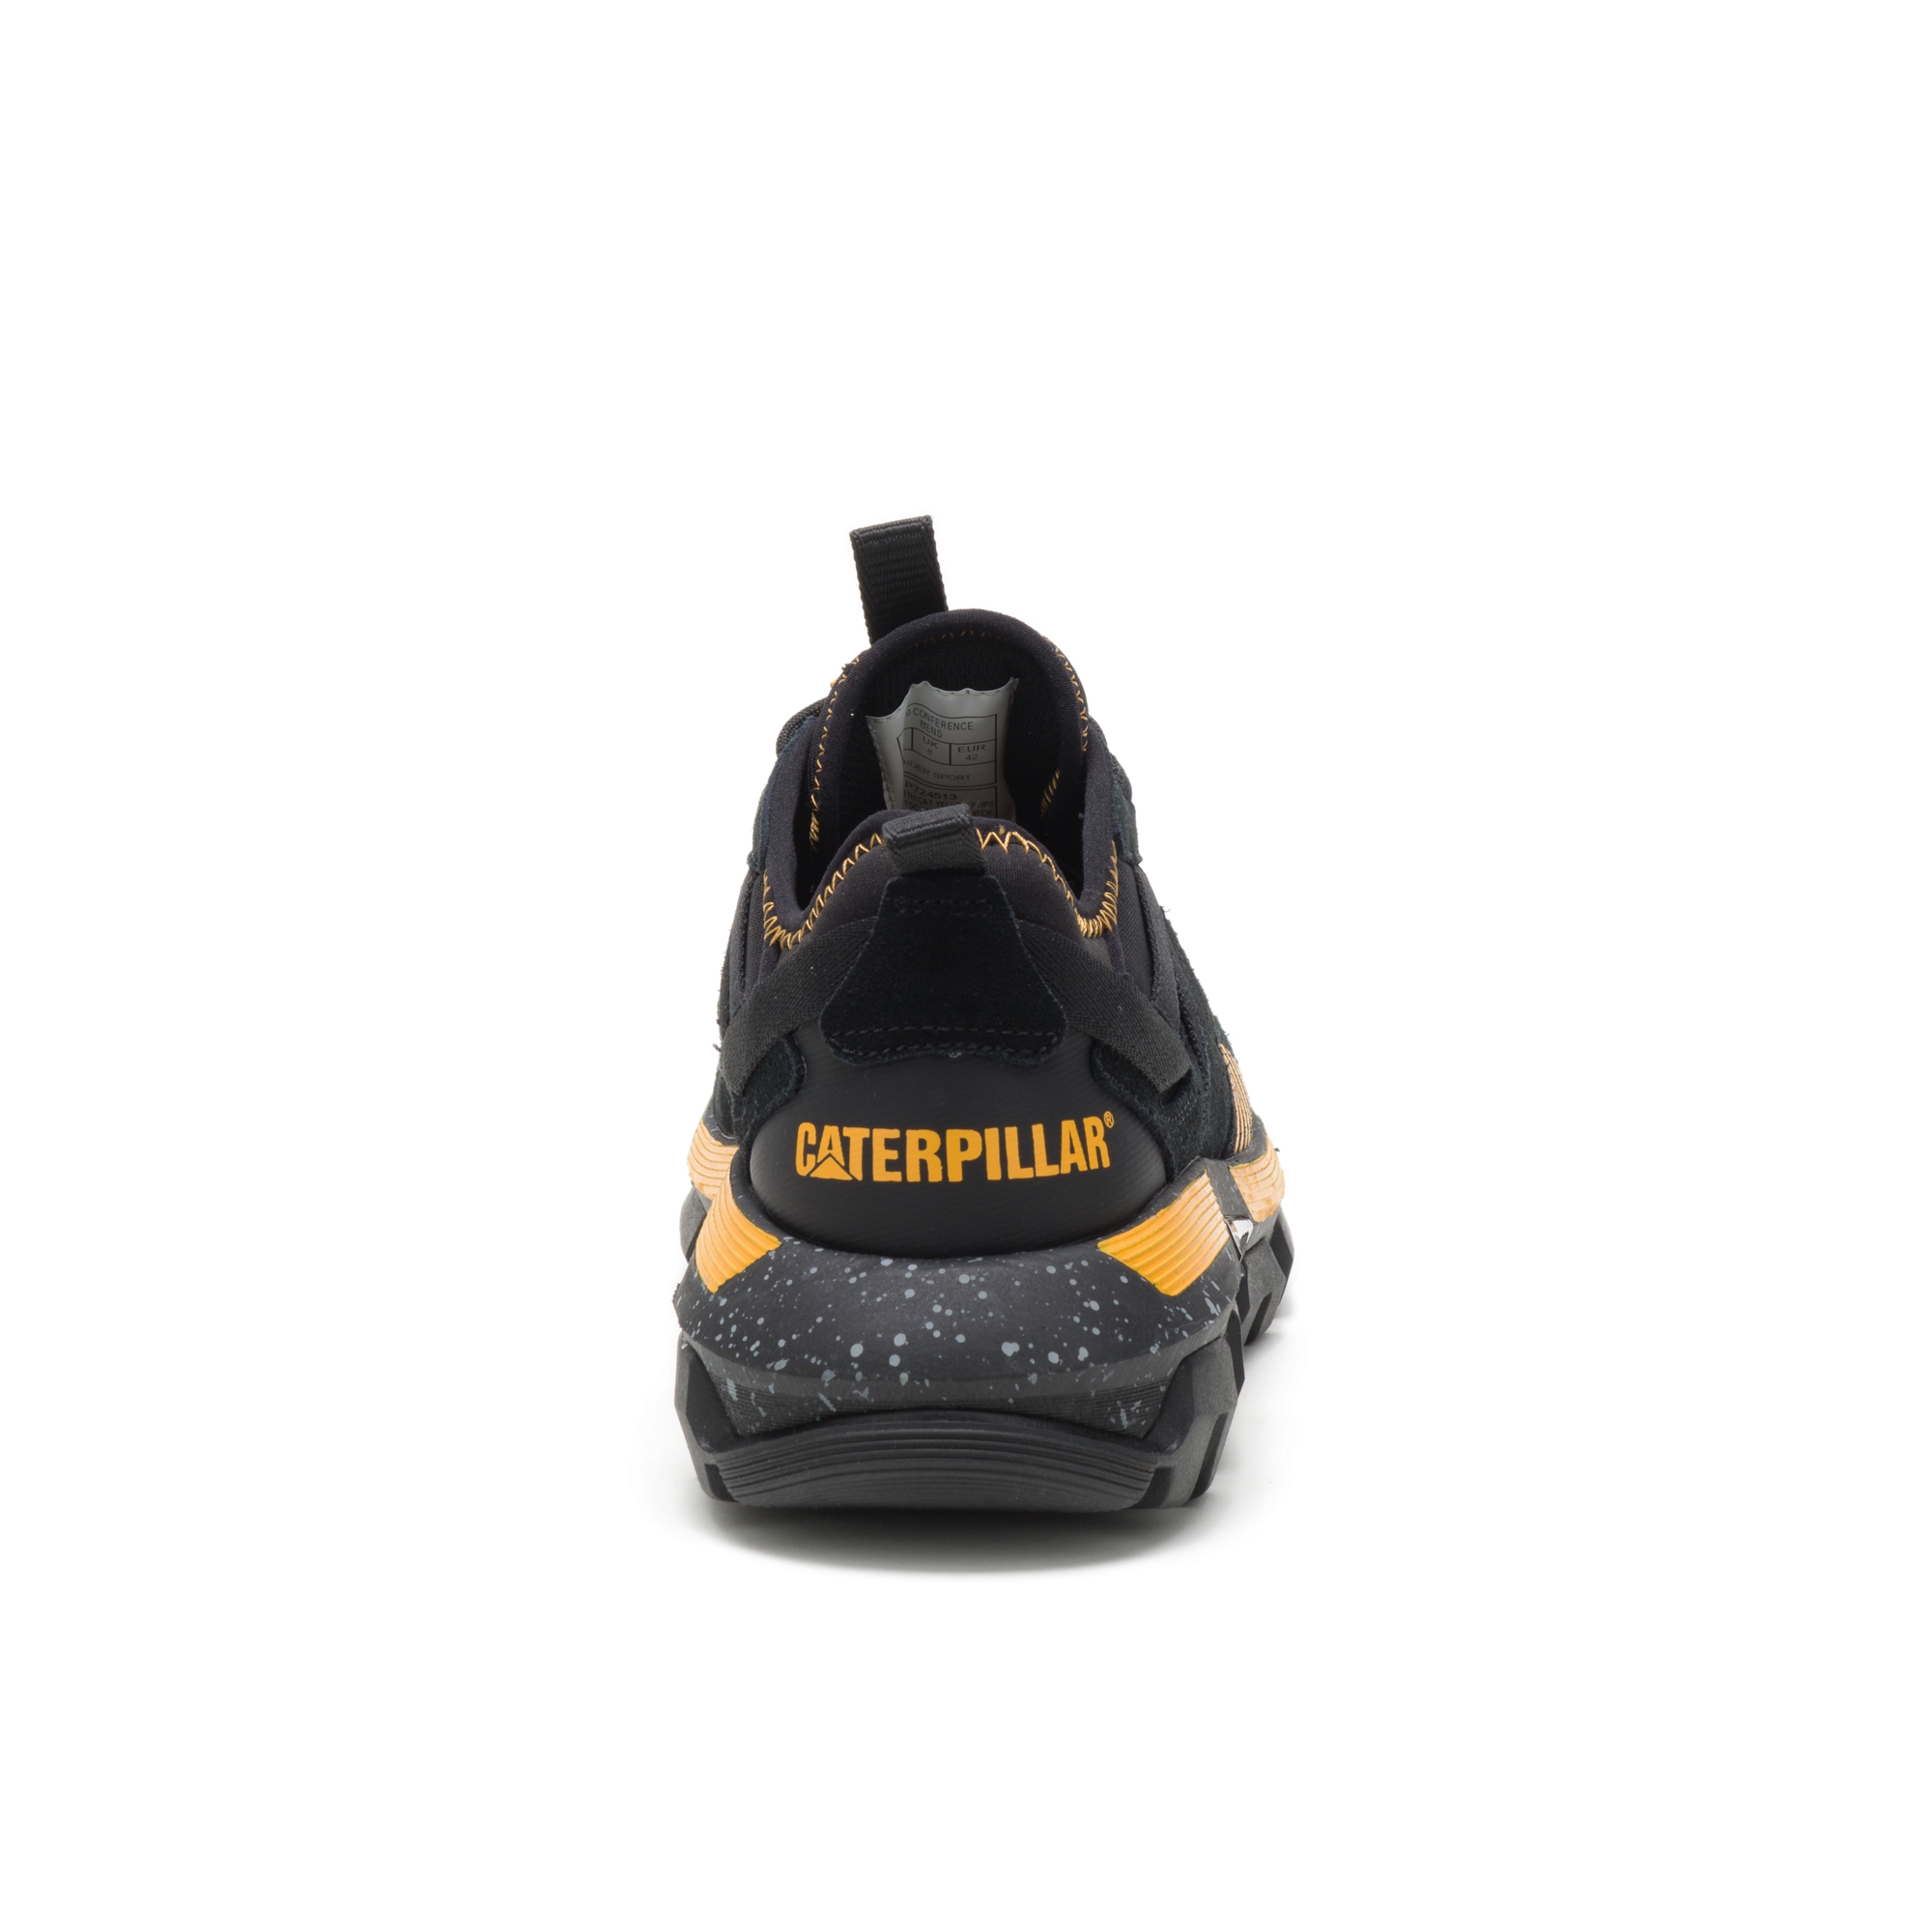 Zapatos Caterpillar Raider Sport - Zapatillas Caterpillar Gris  Oscuro/Negras Para Hombre Descuento